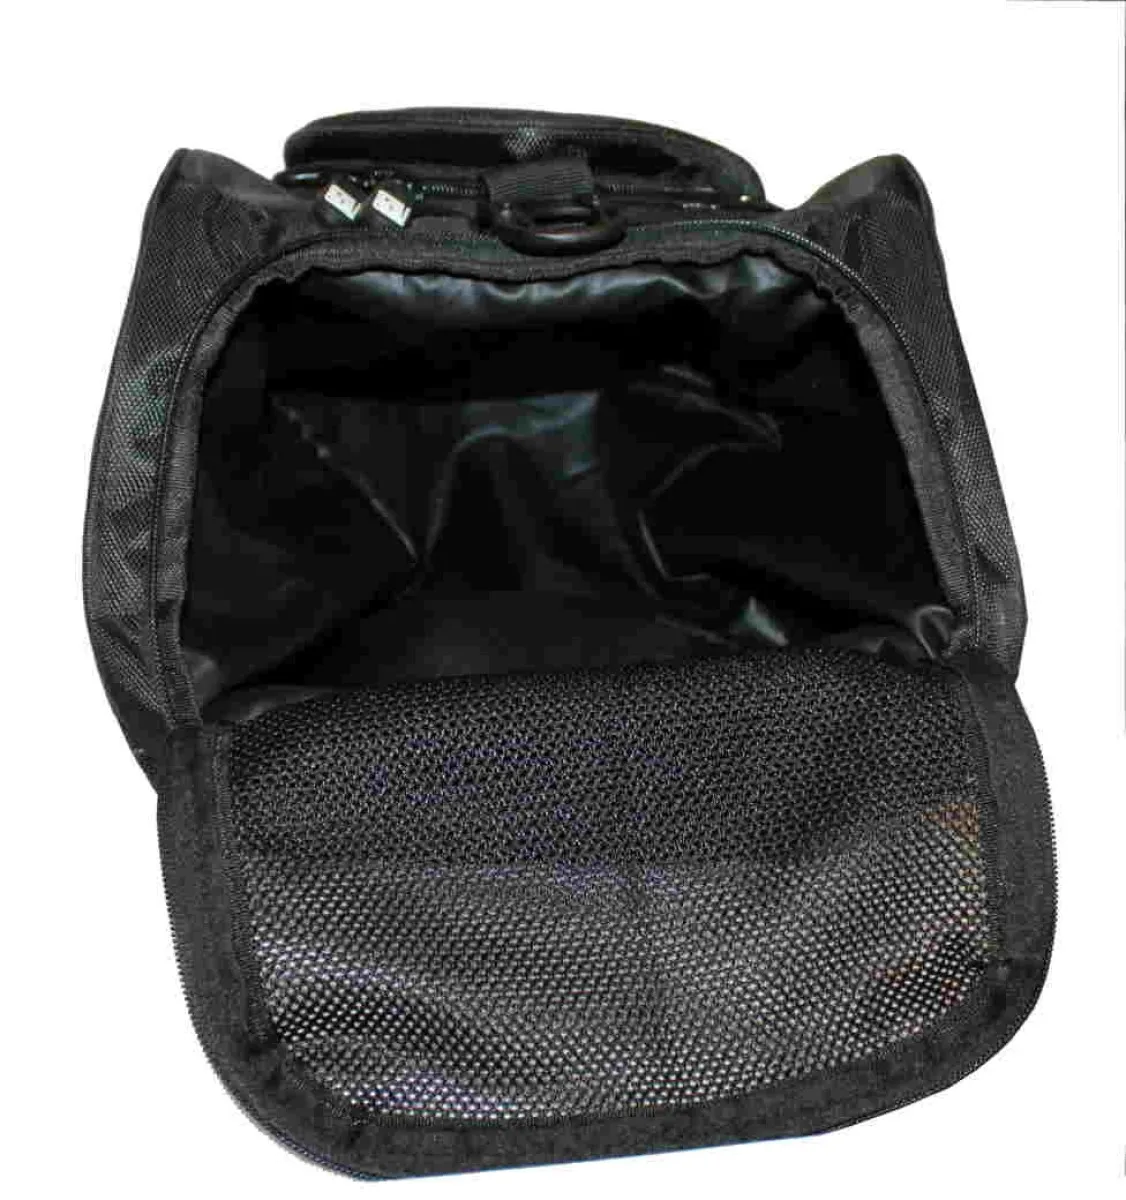 Bolsa de deporte con función de mochila en negro con inserciones laterales en rojo